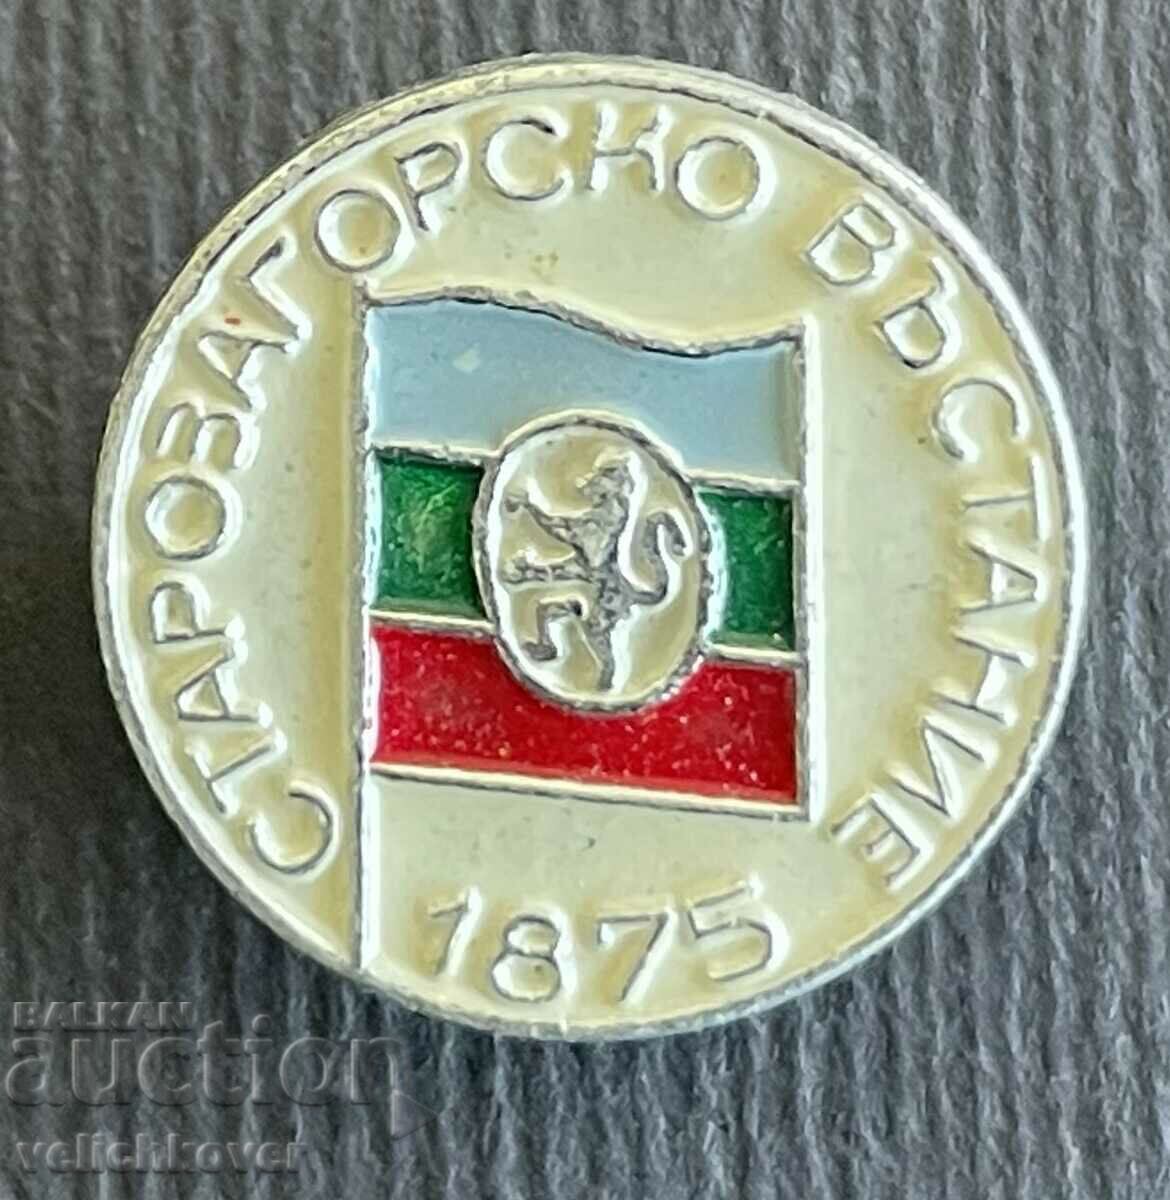 37121 Bulgaria semnează Stara Zagora Uprising 1975.